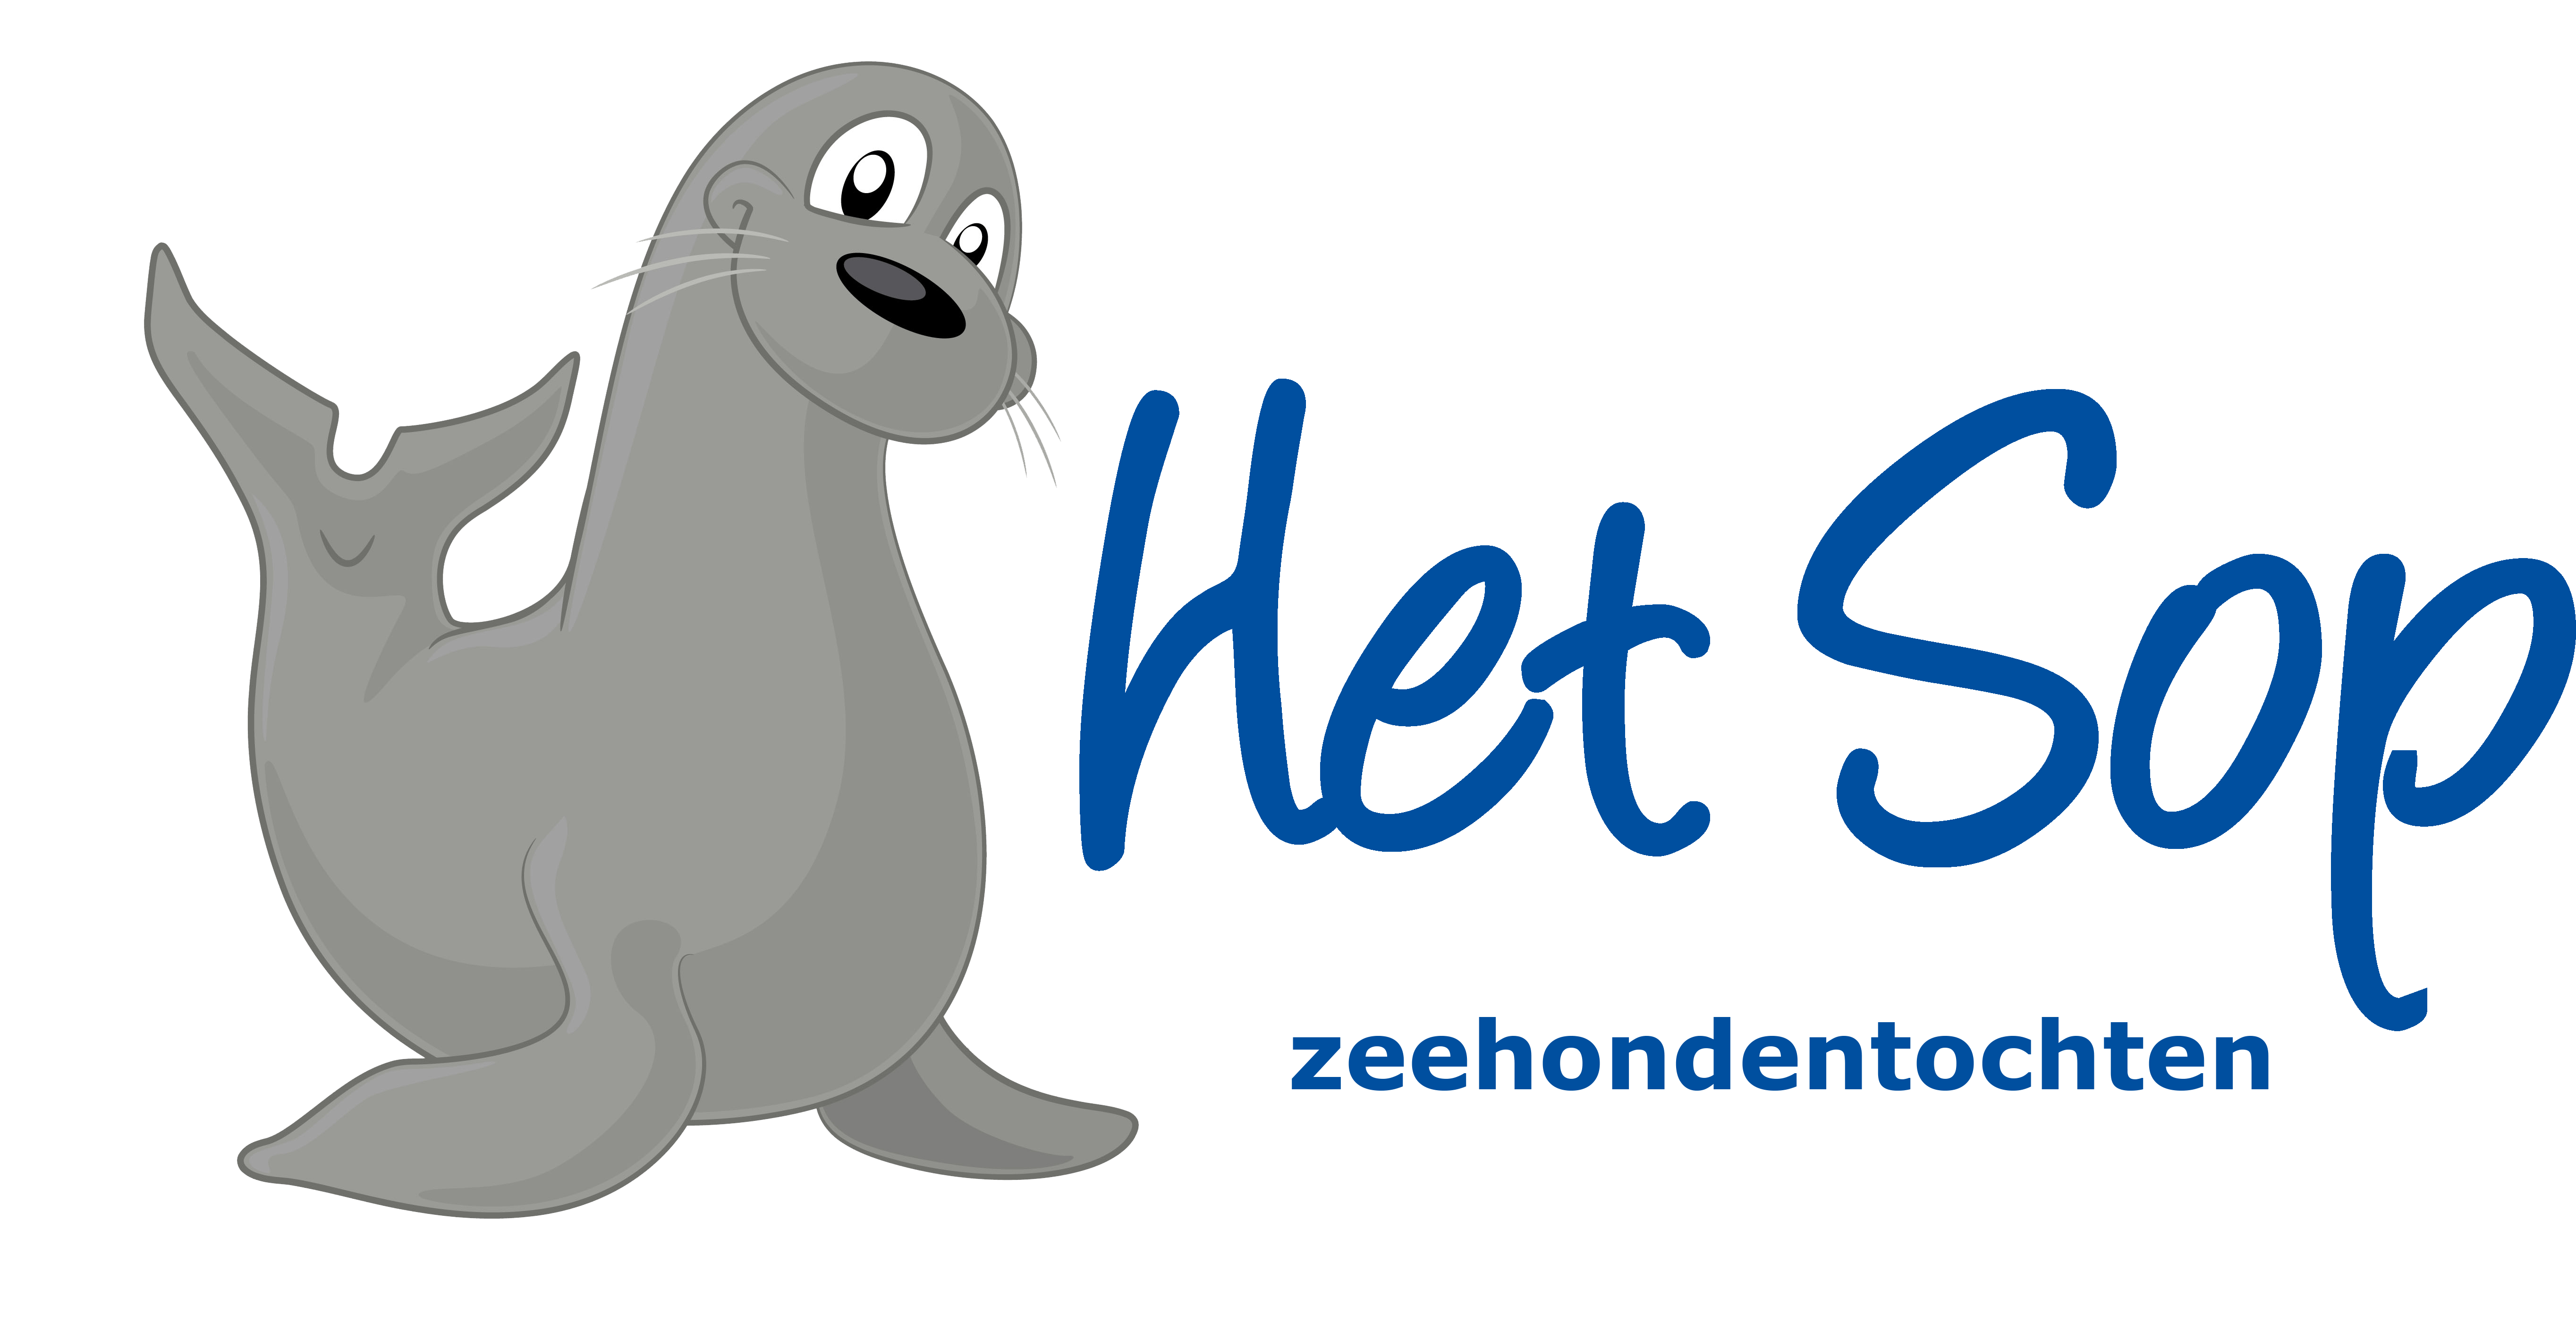 Zeehonden Texel - Zeehondentochten Texel